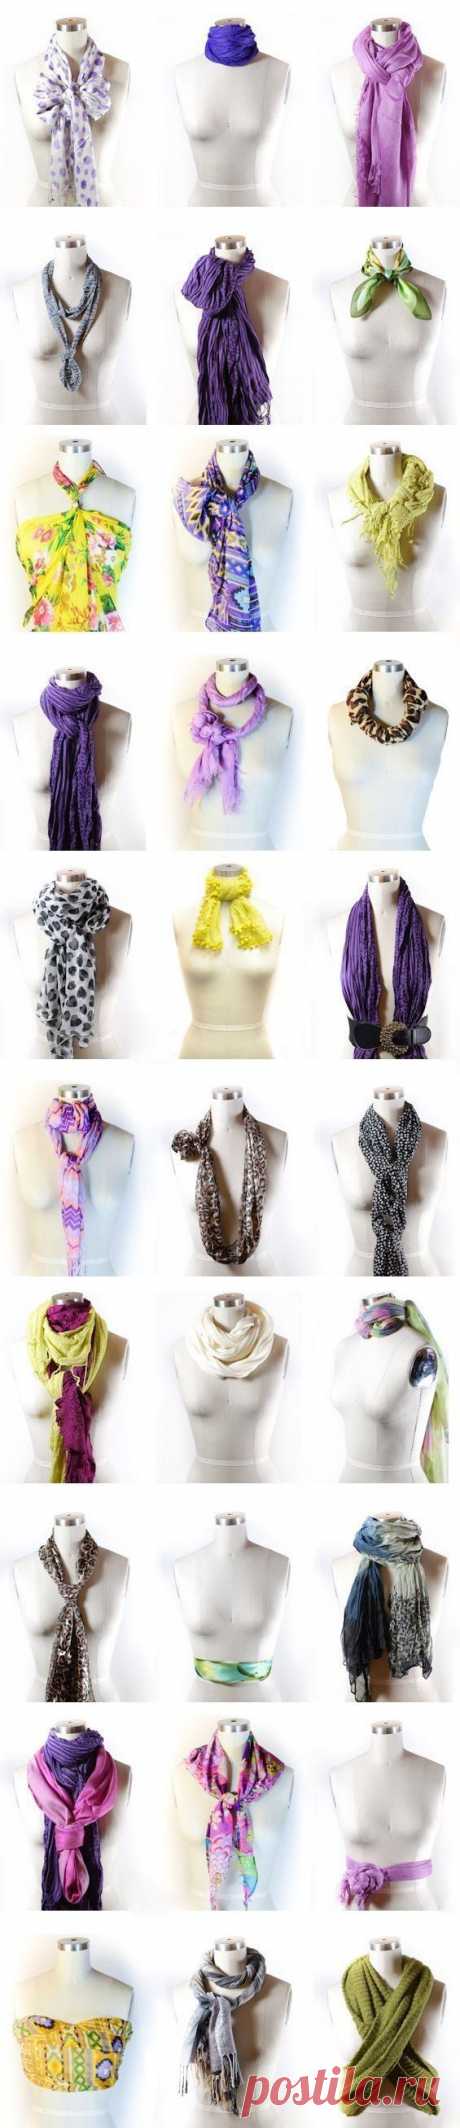 42 способа завязать шарф | Мир женщины